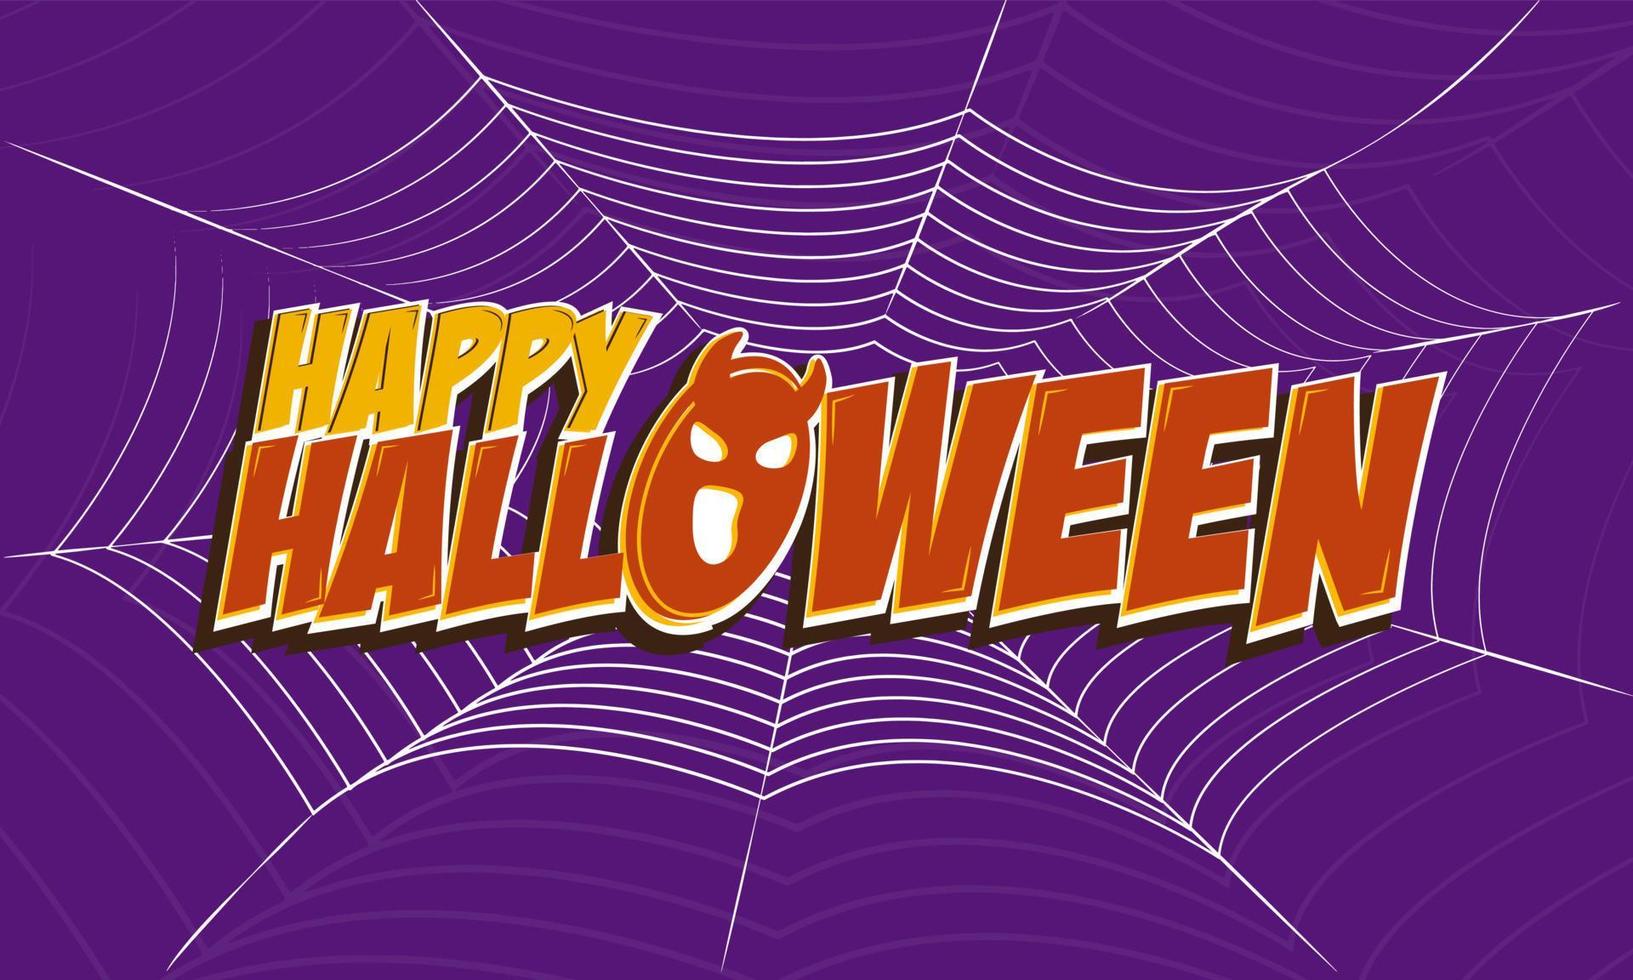 teksteffect happy halloween achtergrond vector